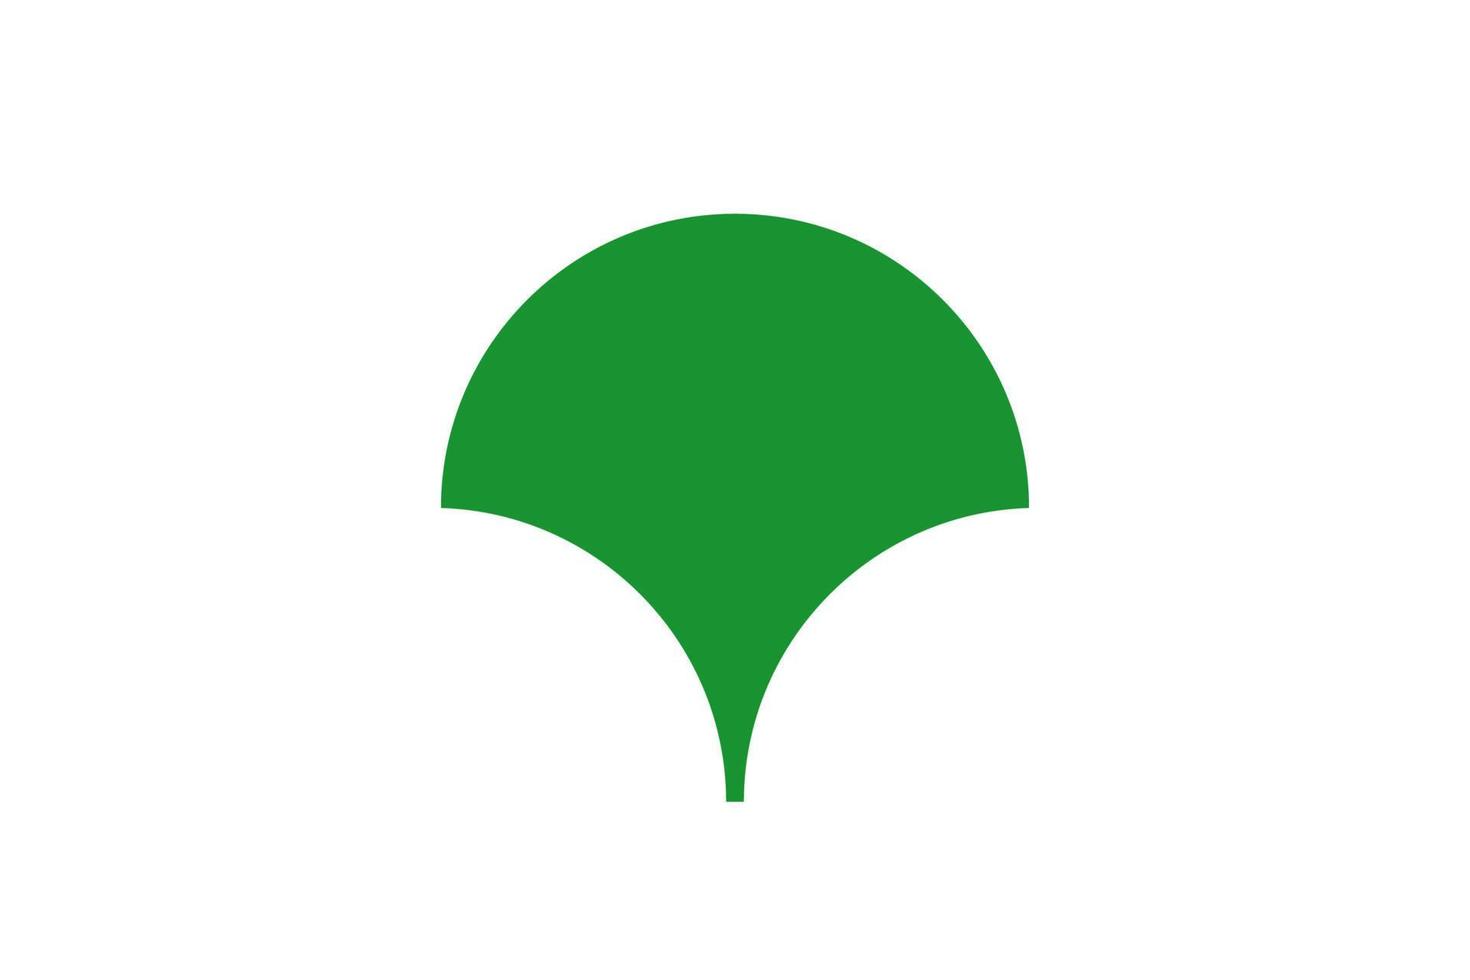 Tokyo officiella stadsflagga med grön symbol, vektorillustration vektor